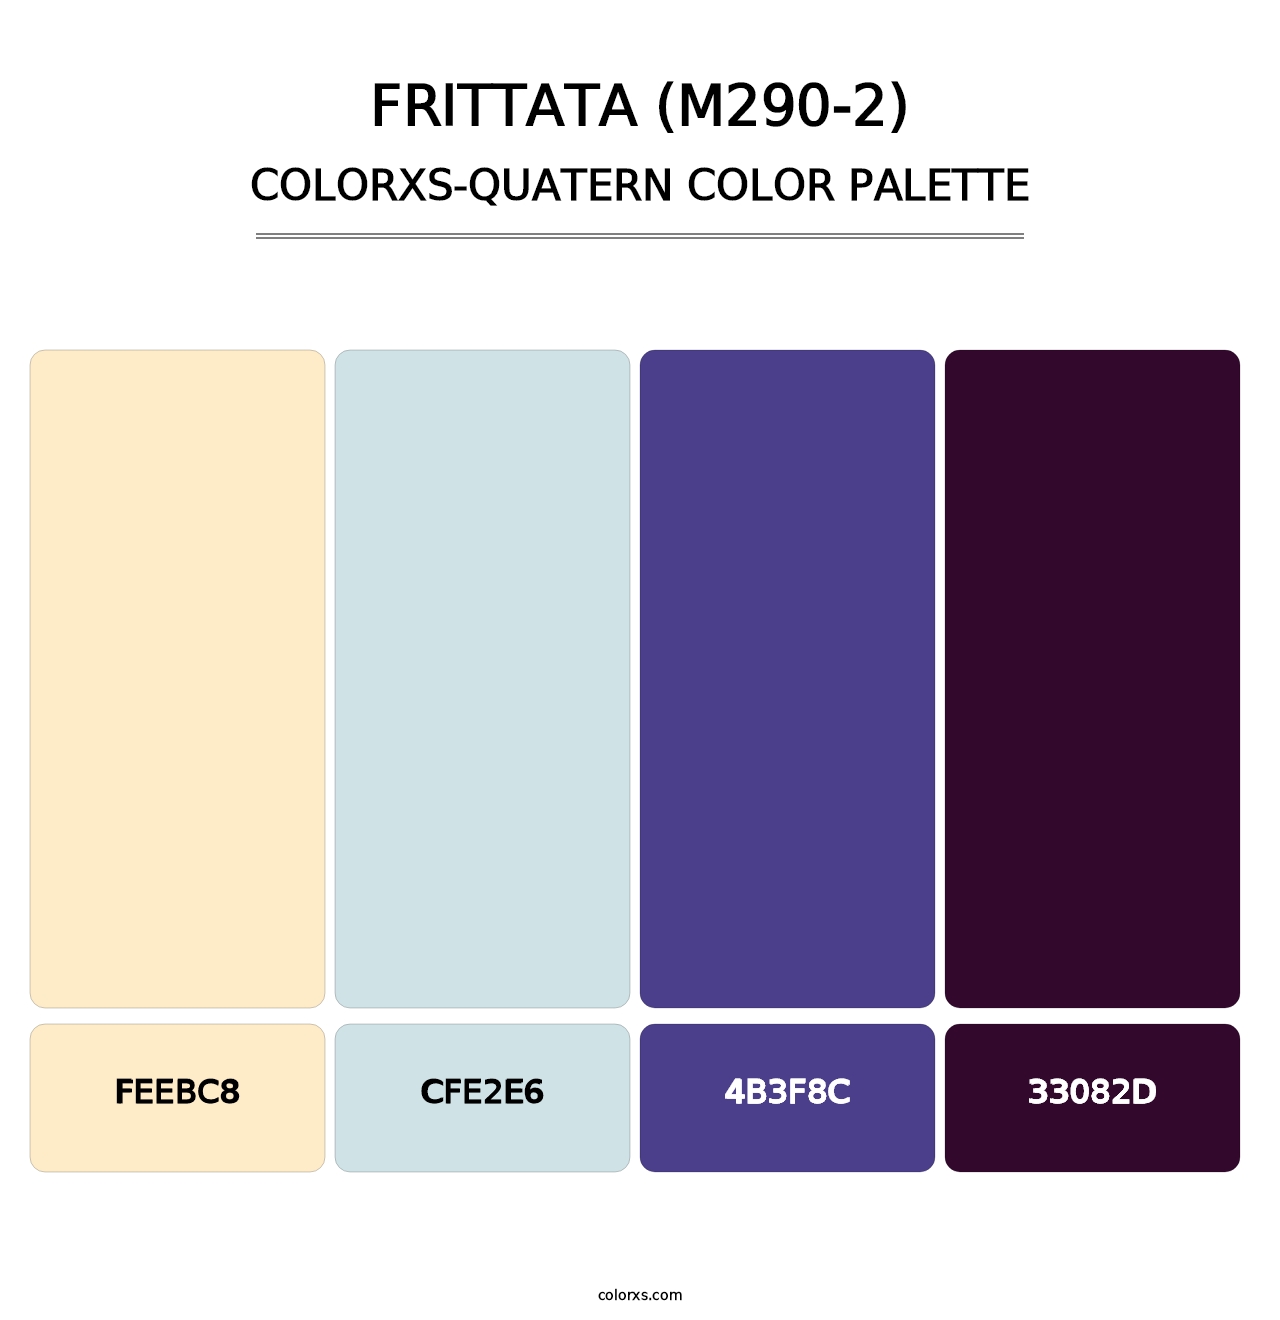 Frittata (M290-2) - Colorxs Quatern Palette